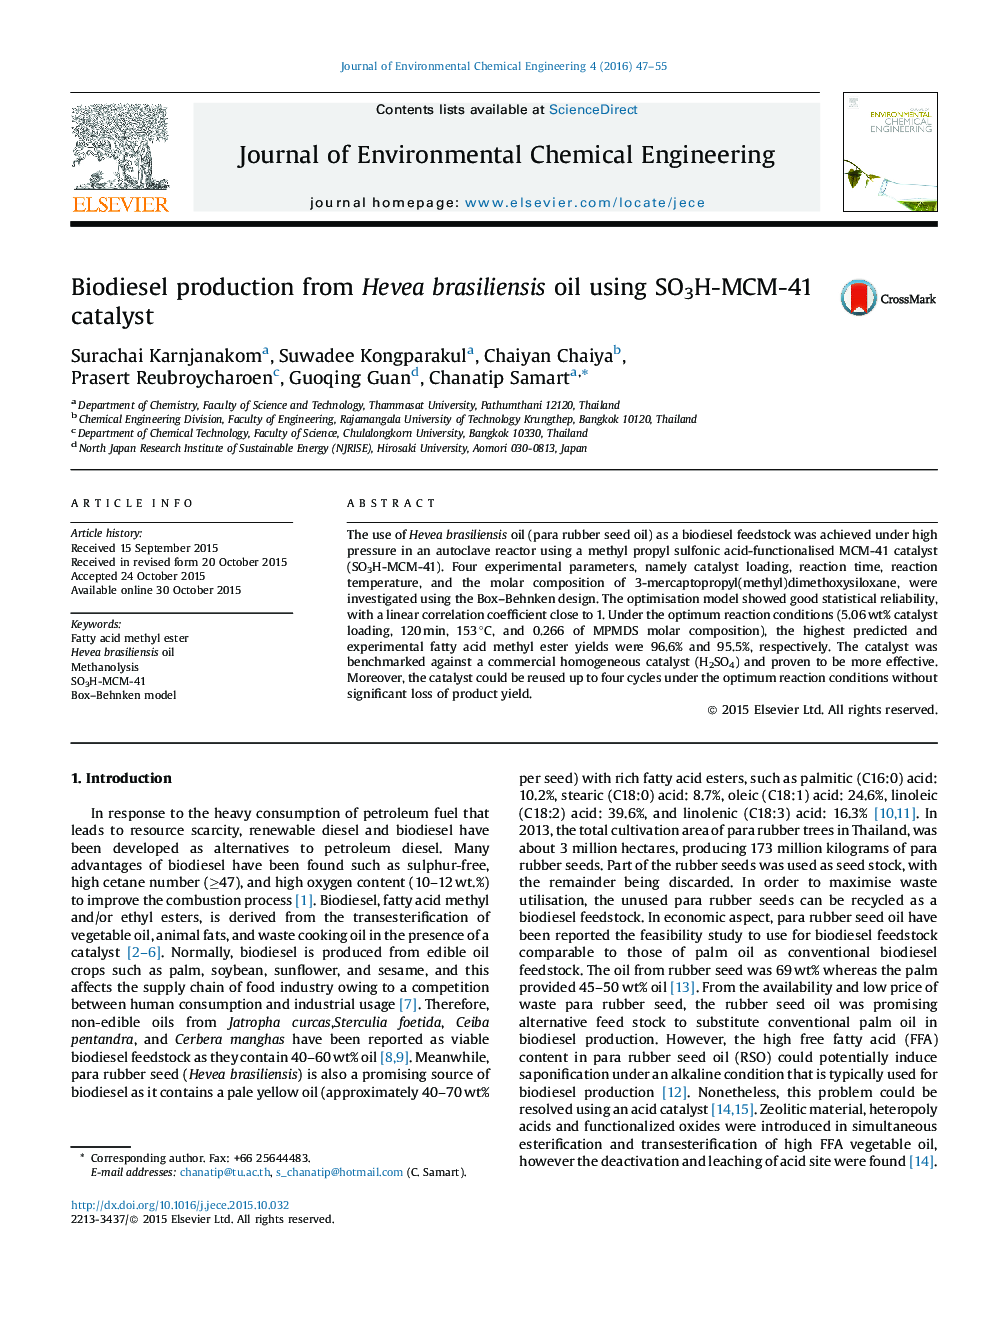 تولید بیودیزل از روغن Hevea brasiliensis با استفاده از کاتالیزور SO3H-MCM-41